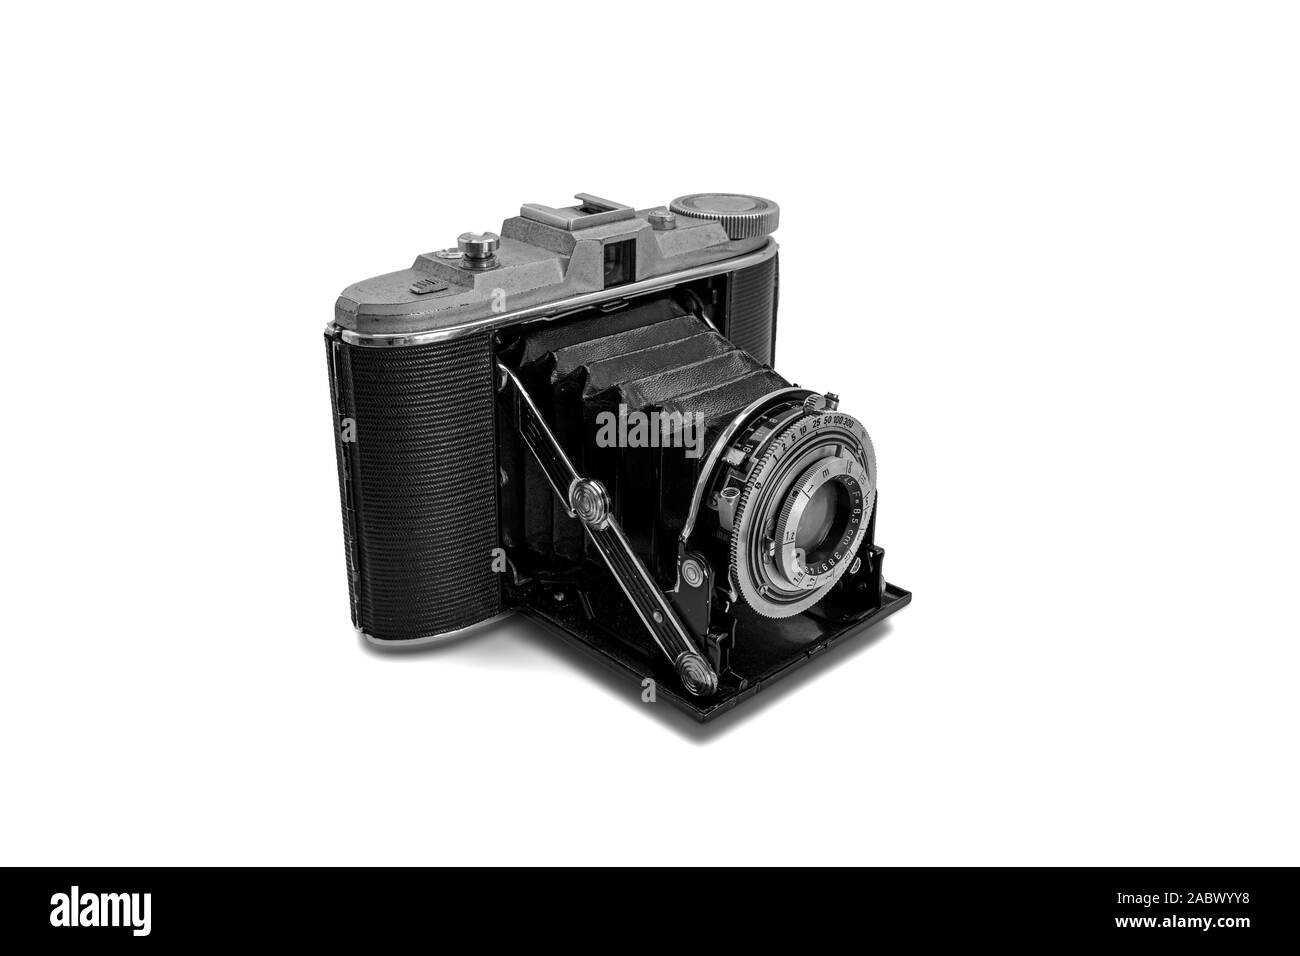 Metal rétro nostalgique horizontal de l'appareil photo compact pliable format moyen avec obturateur manuel Banque D'Images